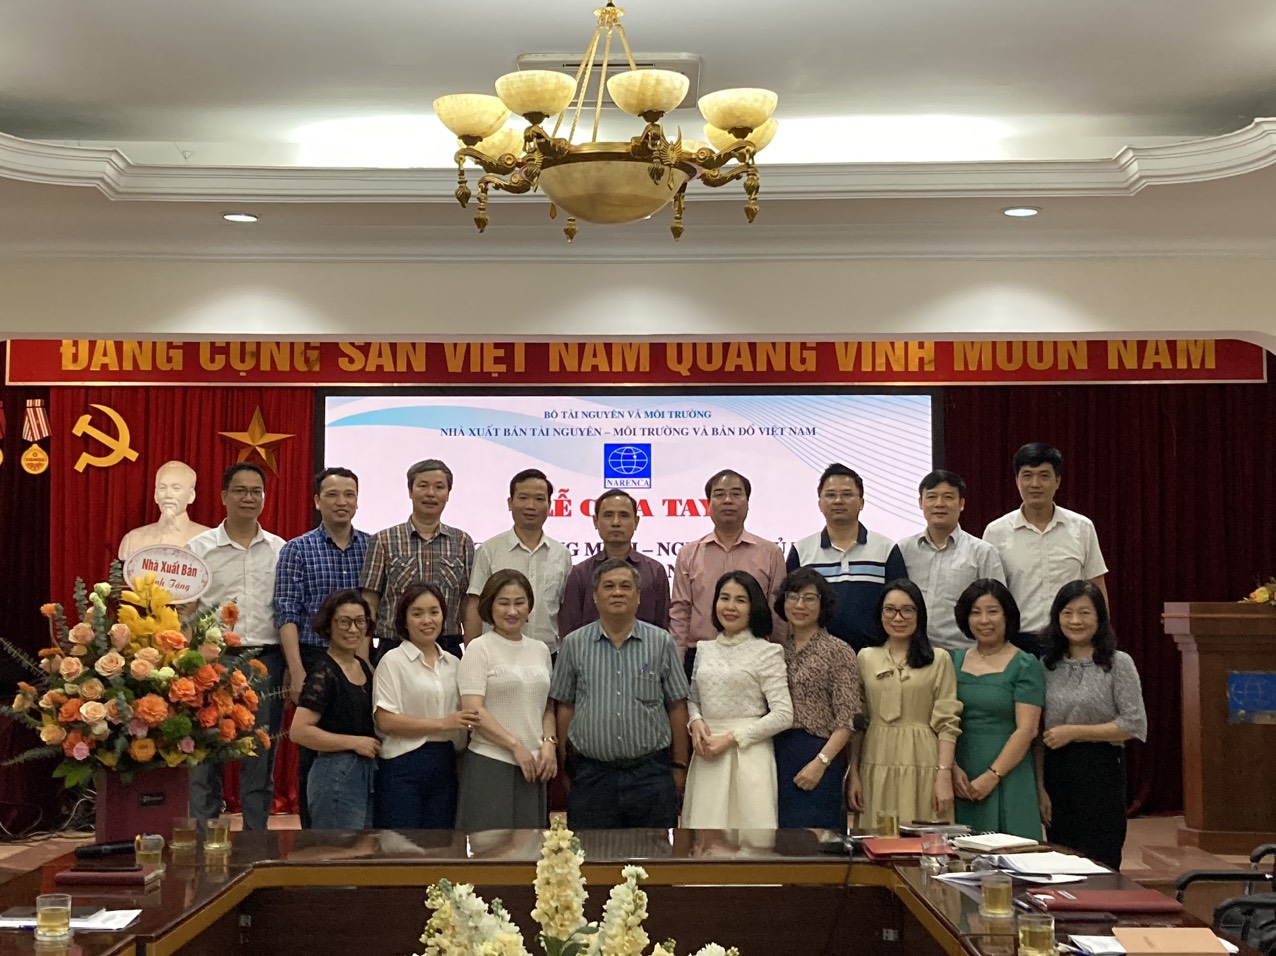 Gặp mặt chia tay ông Kim Quang Minh - Nguyên Chủ tịch kiêm Tổng Giám đốc Nhà xuất bản Tài nguyên - Môi trường và Bản đồ Việt Nam